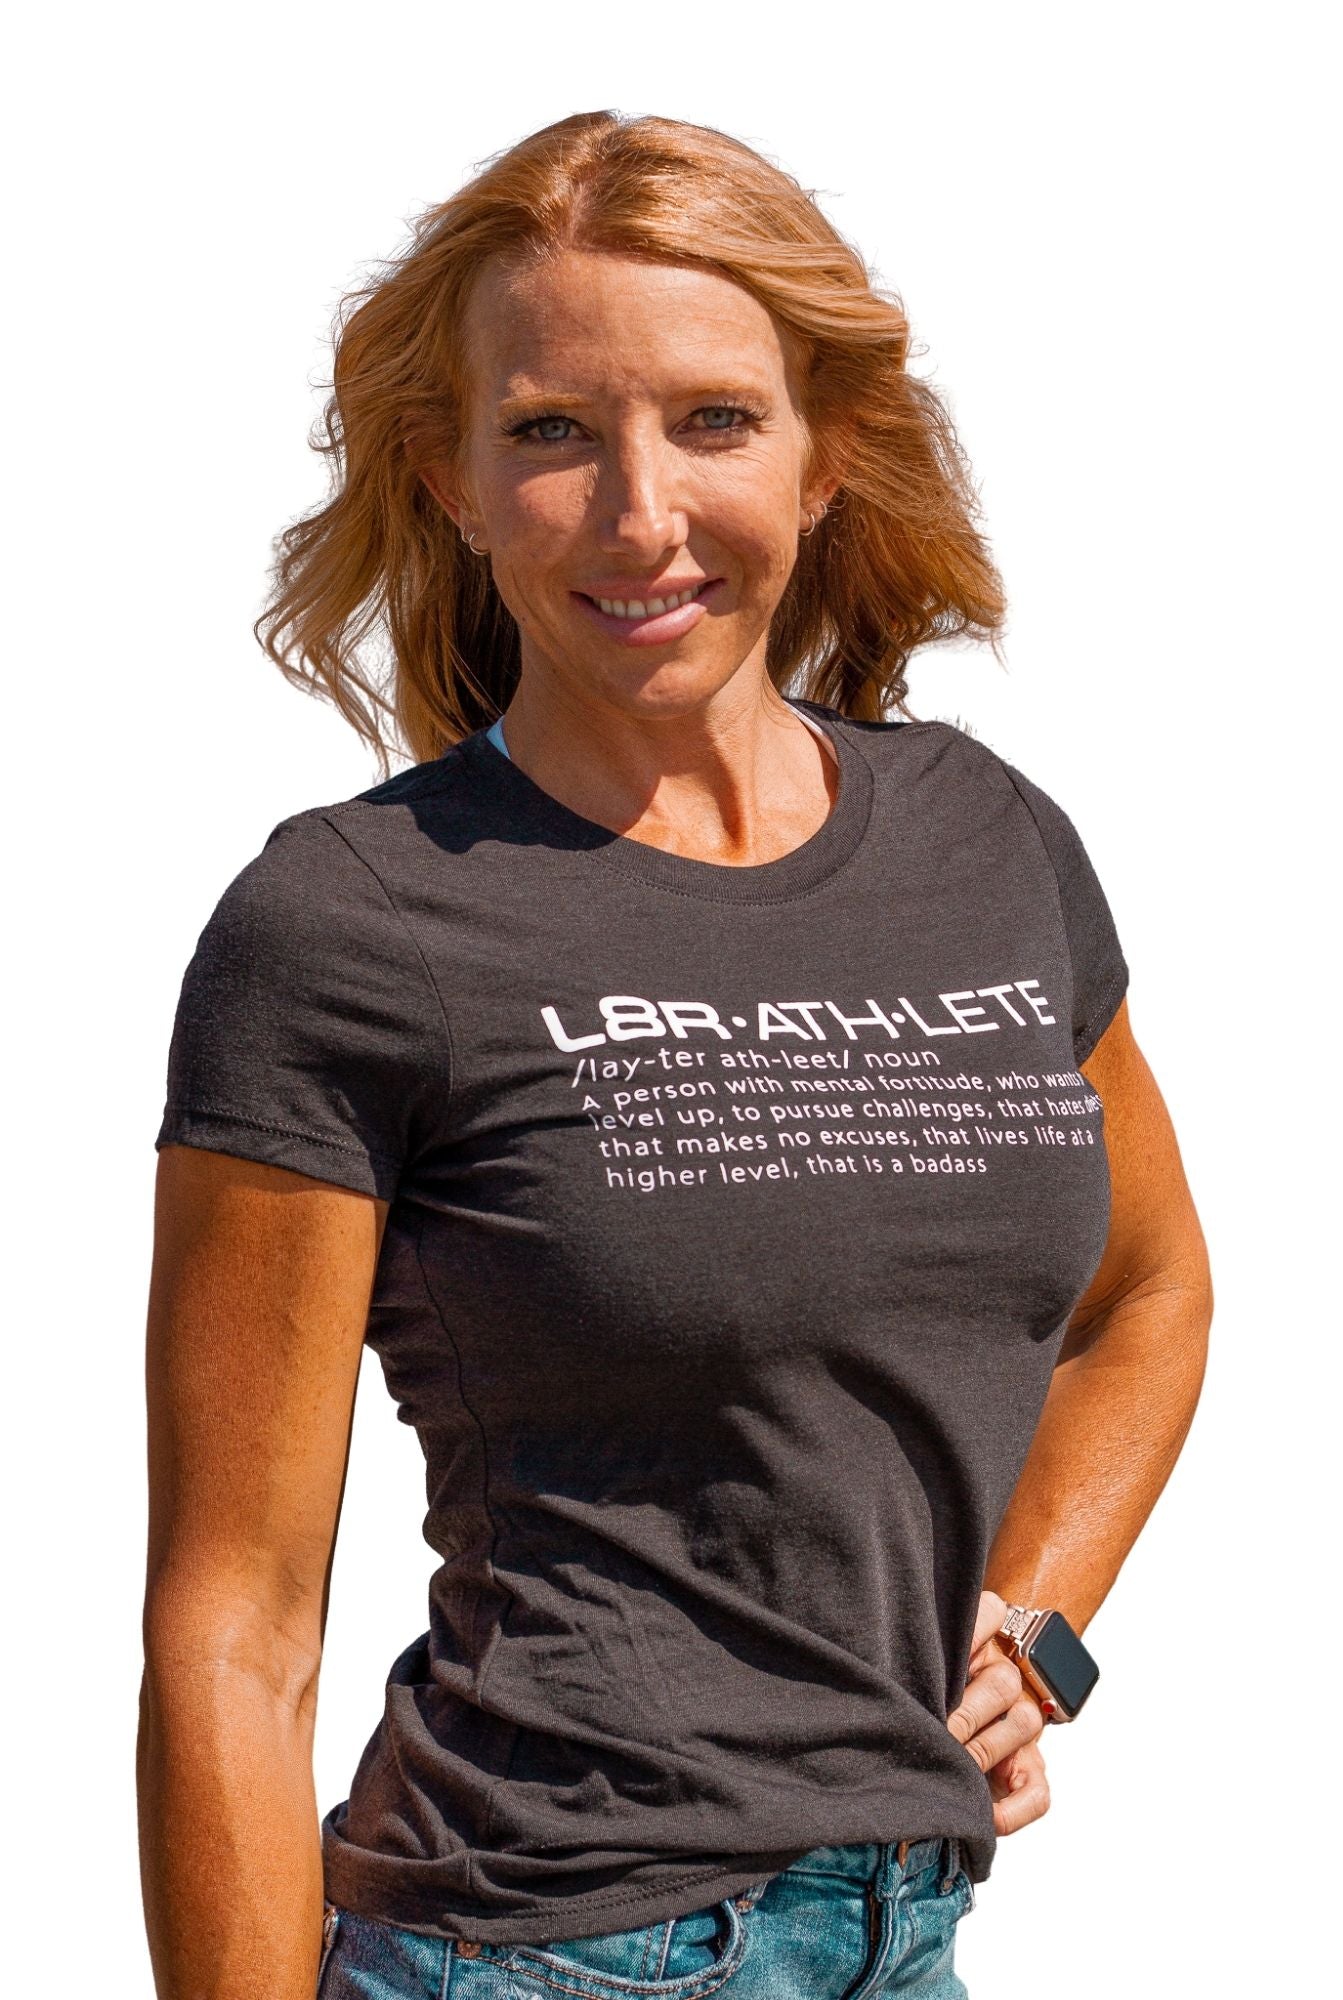 L8R Athlete Womens T-Shirt